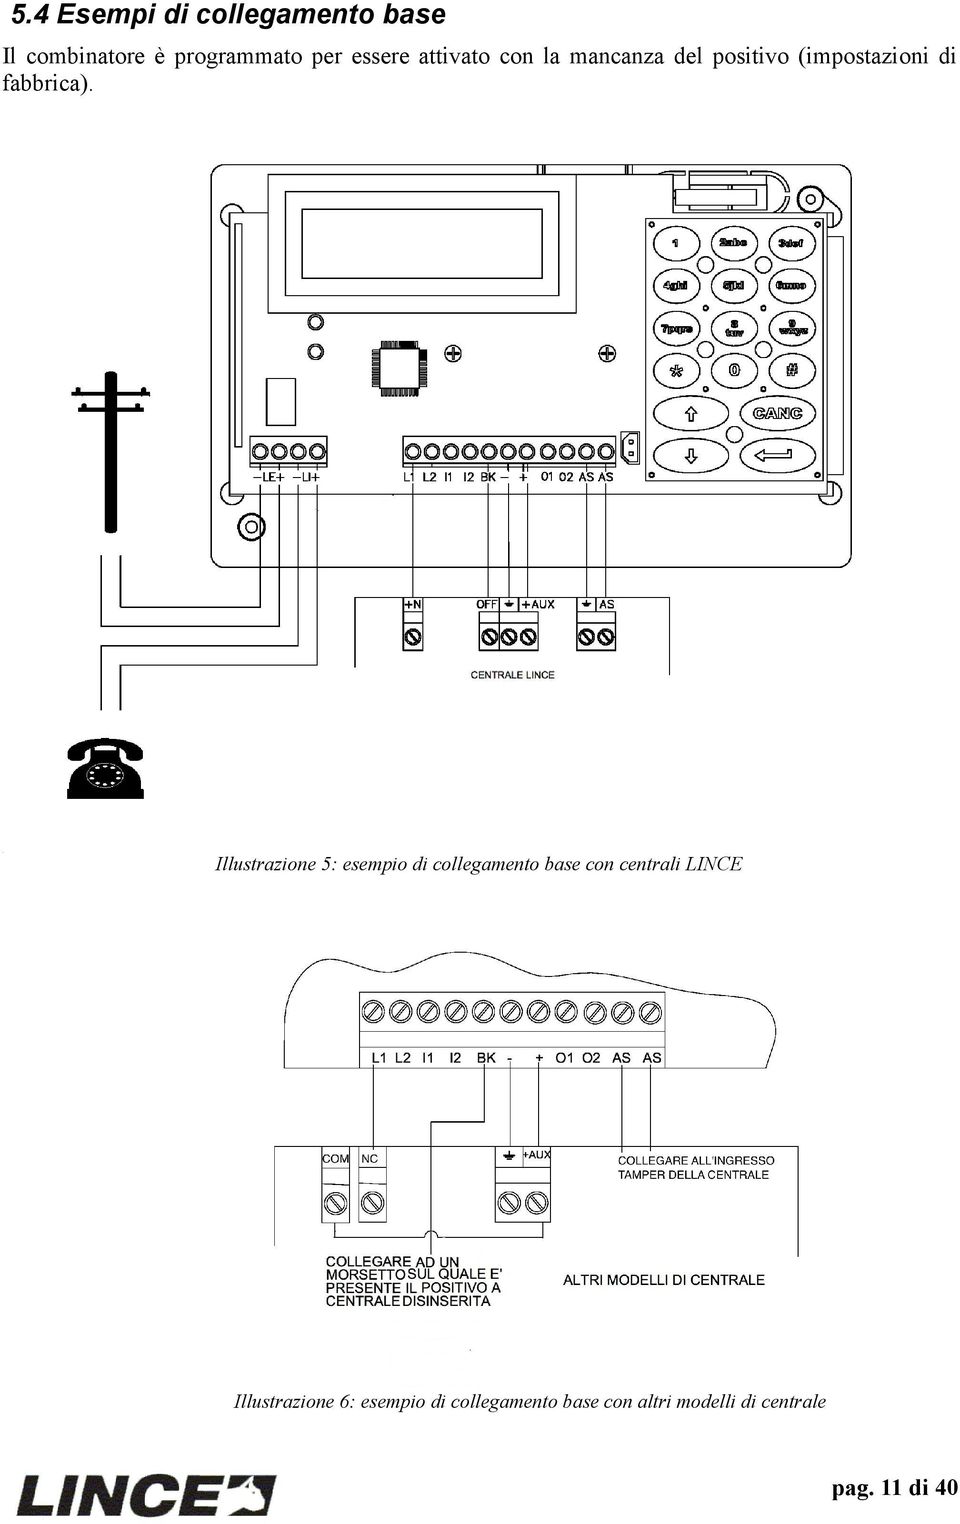 Illustrazione 5: esempio di collegamento base con centrali LINCE